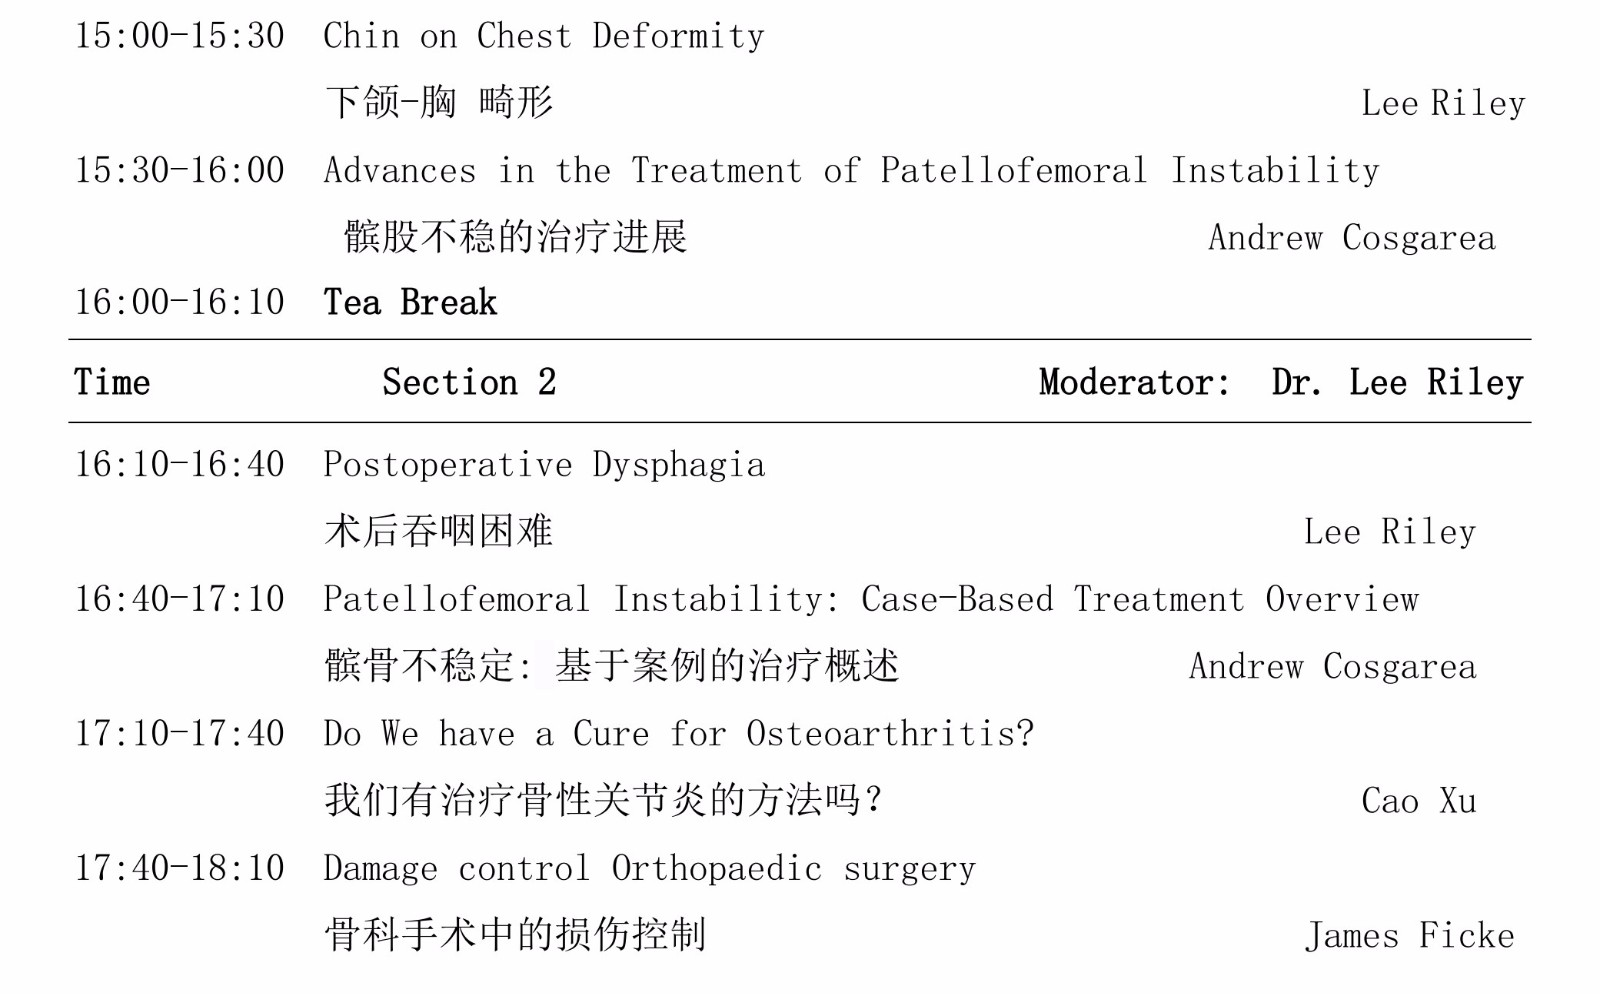 2018.3.6版第二届中国骨科创新与转化学术会议会议手册 jpg_Page35.jpg